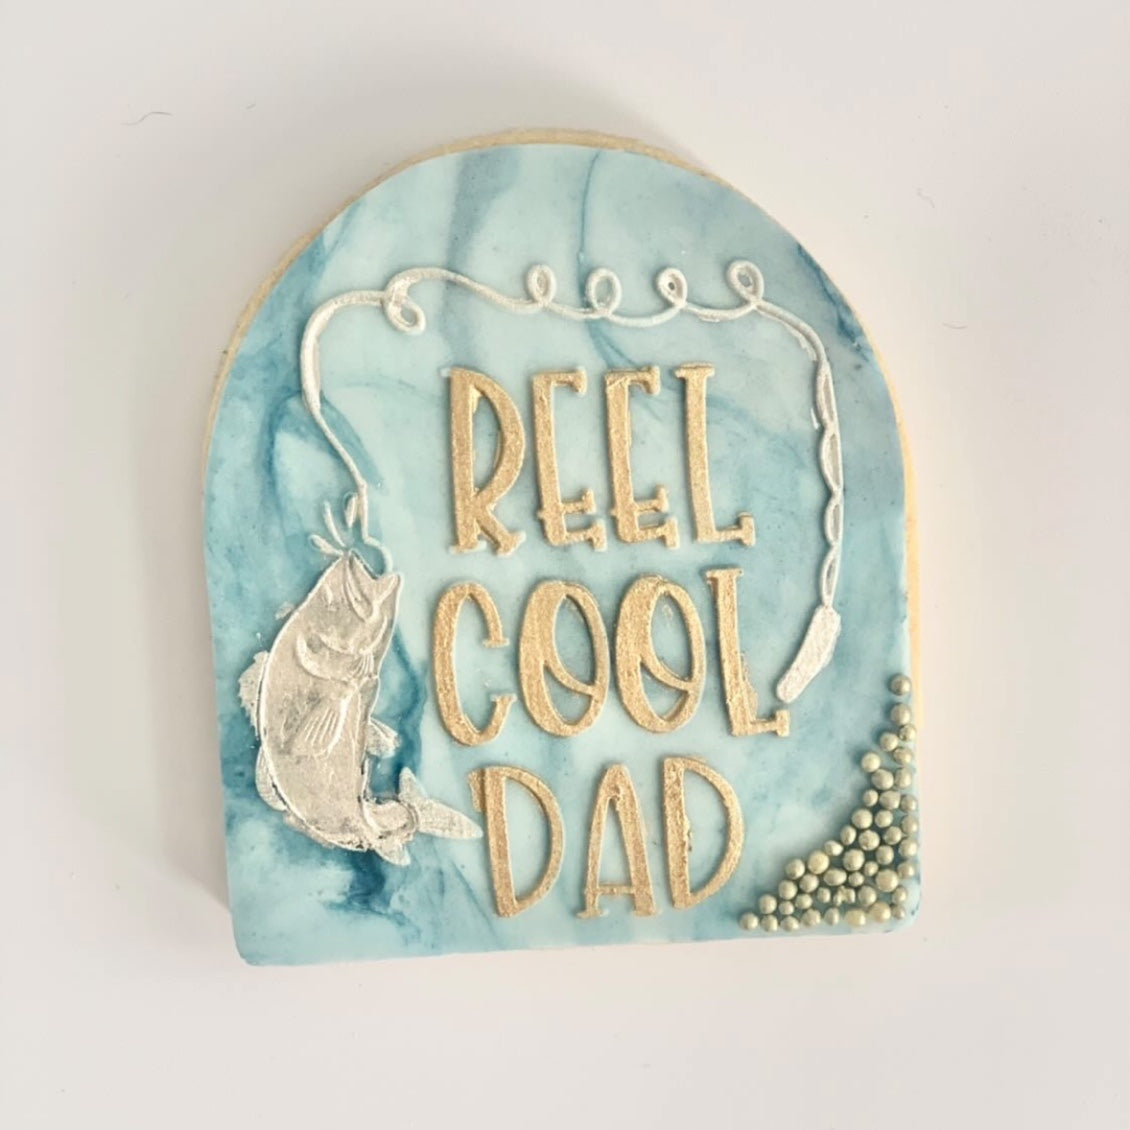 Reel Cool Dad Cookie Embosser.